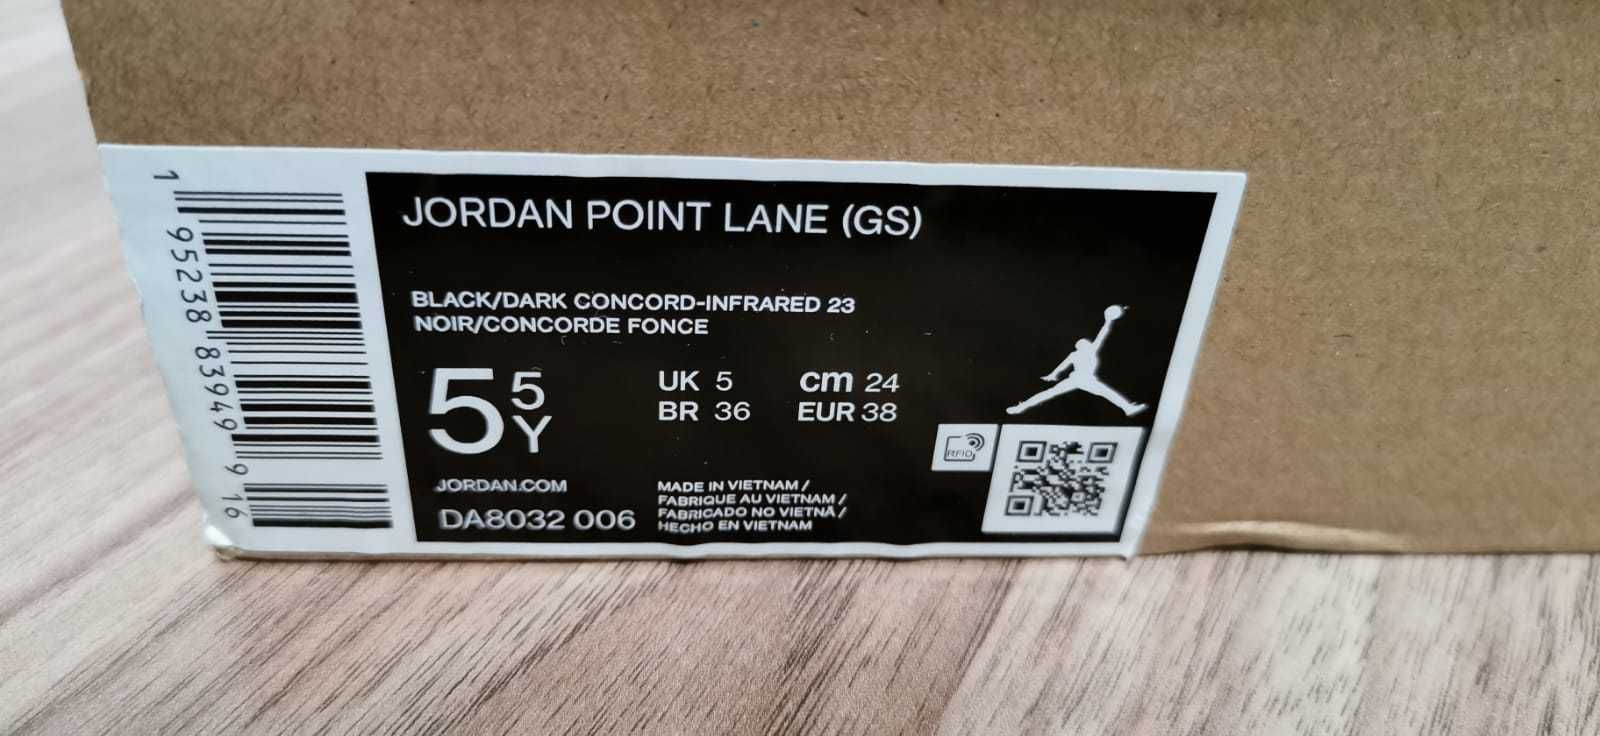 Adidasi NOI - JORDAN Point Lane (GS), marime 38, 24 cm